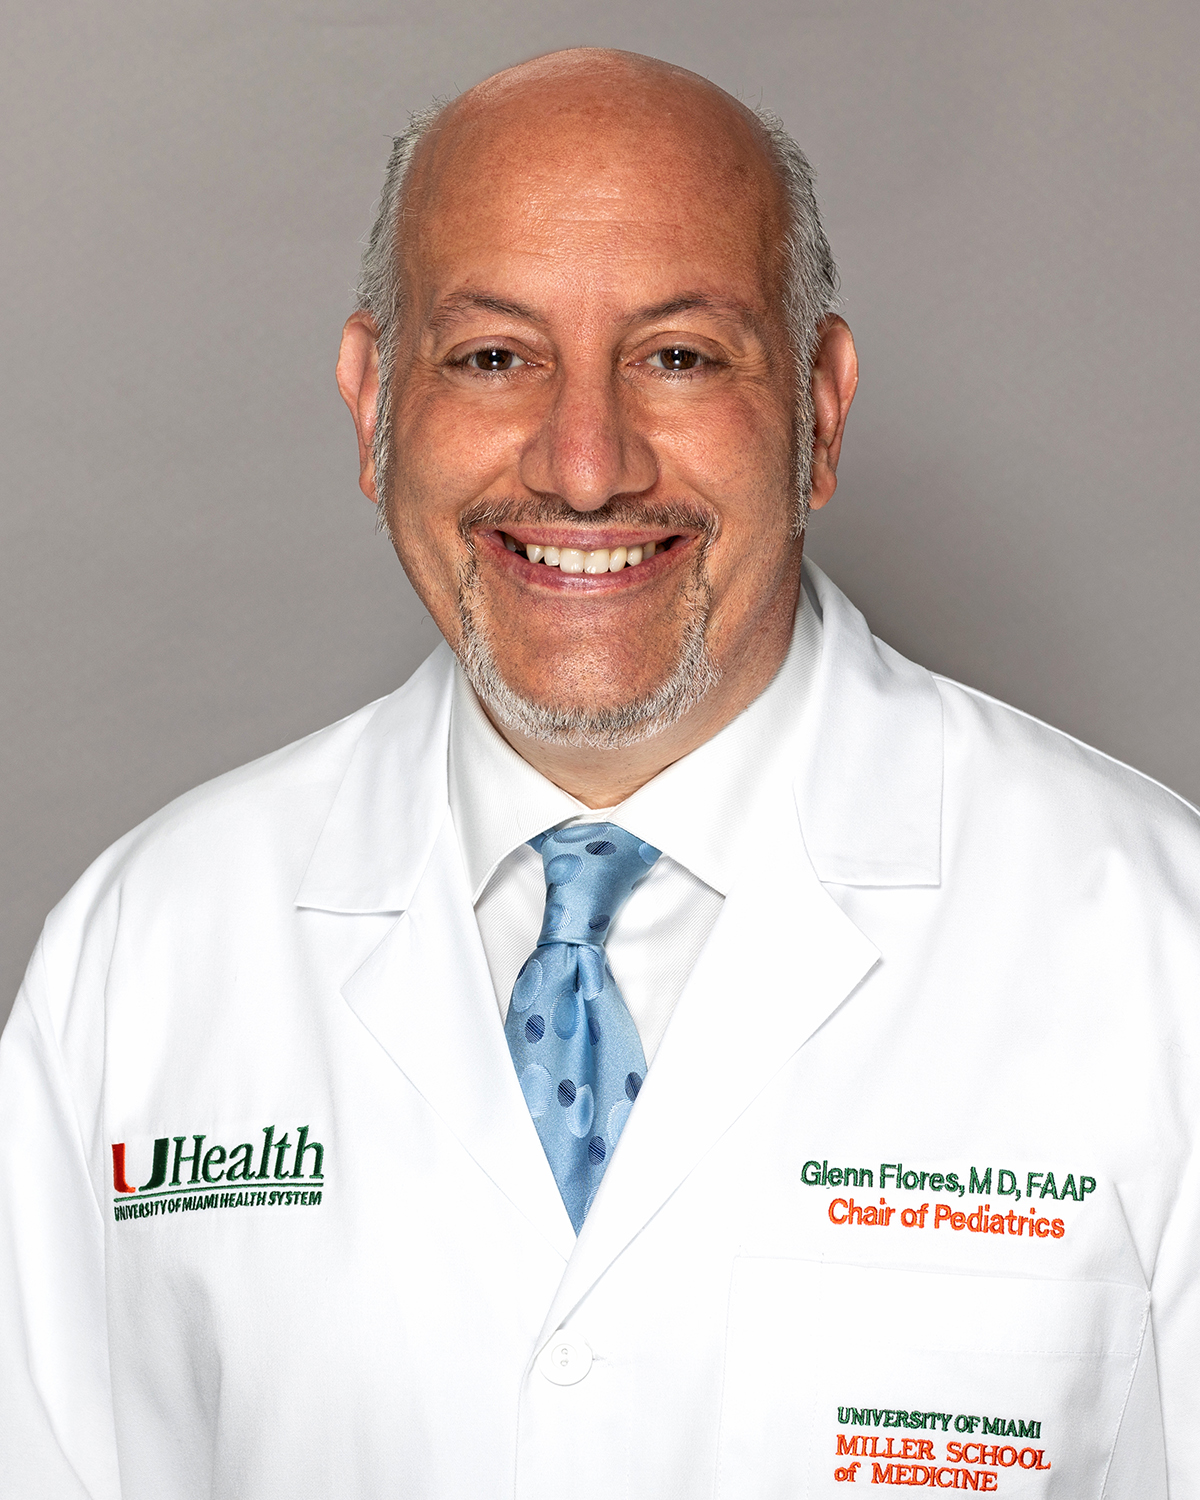 Glenn Flores, M.D., FAAP Chair of Pediatrics